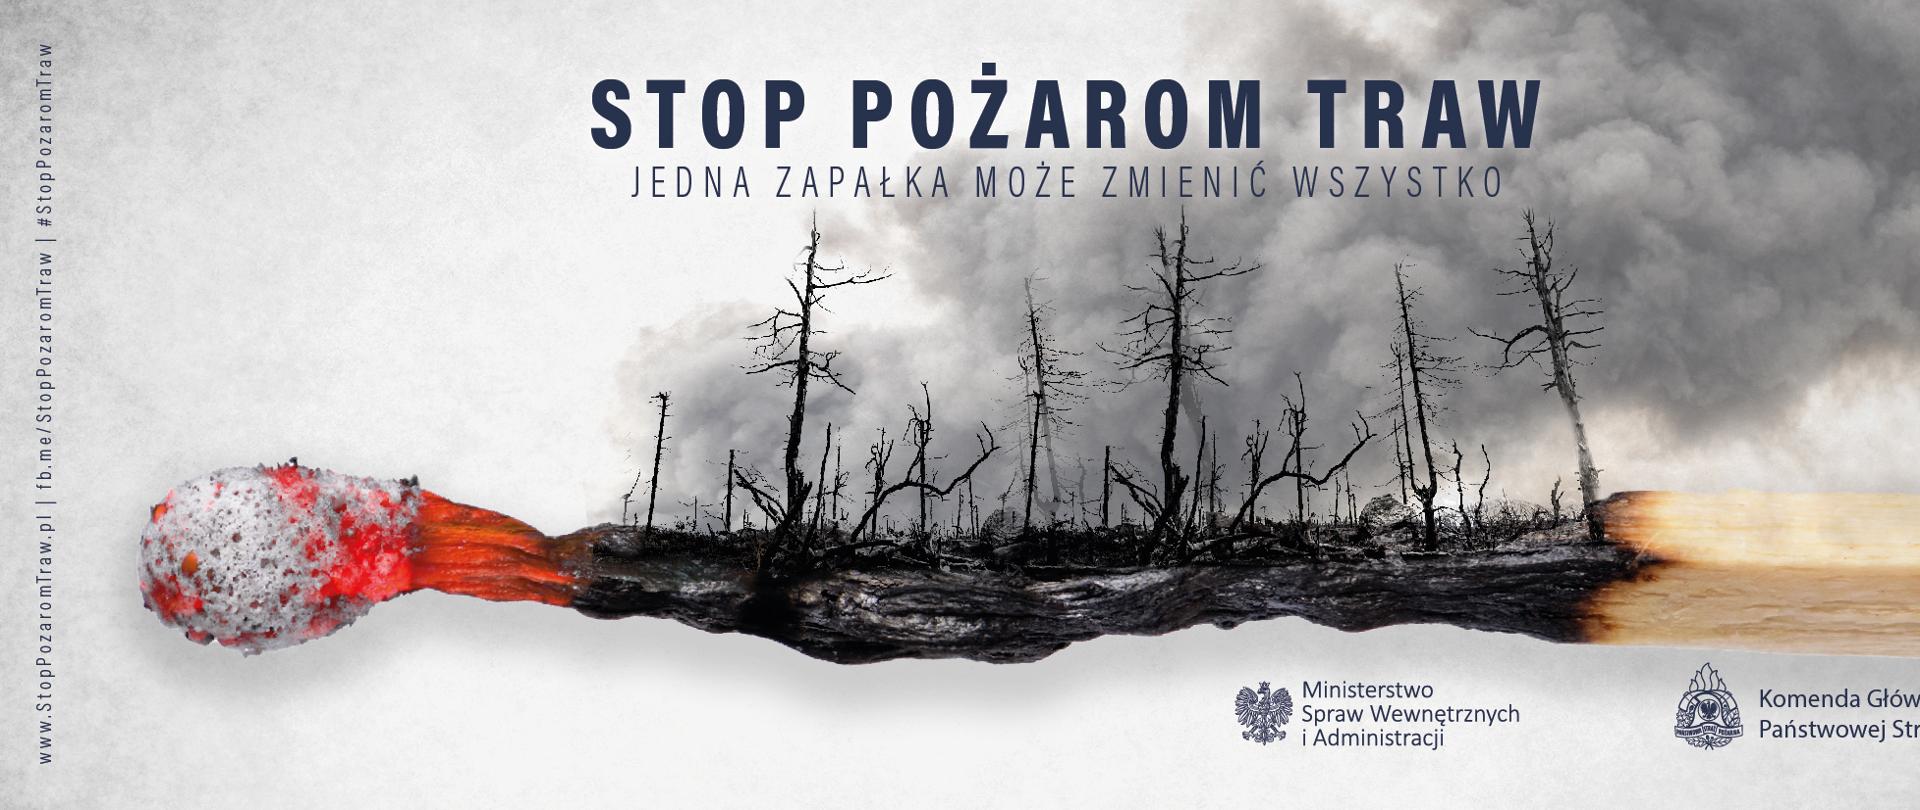 Zdjęcie przedstawia palącą się zapałkę oraz spalony las a nad nim napis STOP POŻAROM TRAW JEDNA ZAPAŁKA MOŻE ZMIENIĆ WSZYSTKO